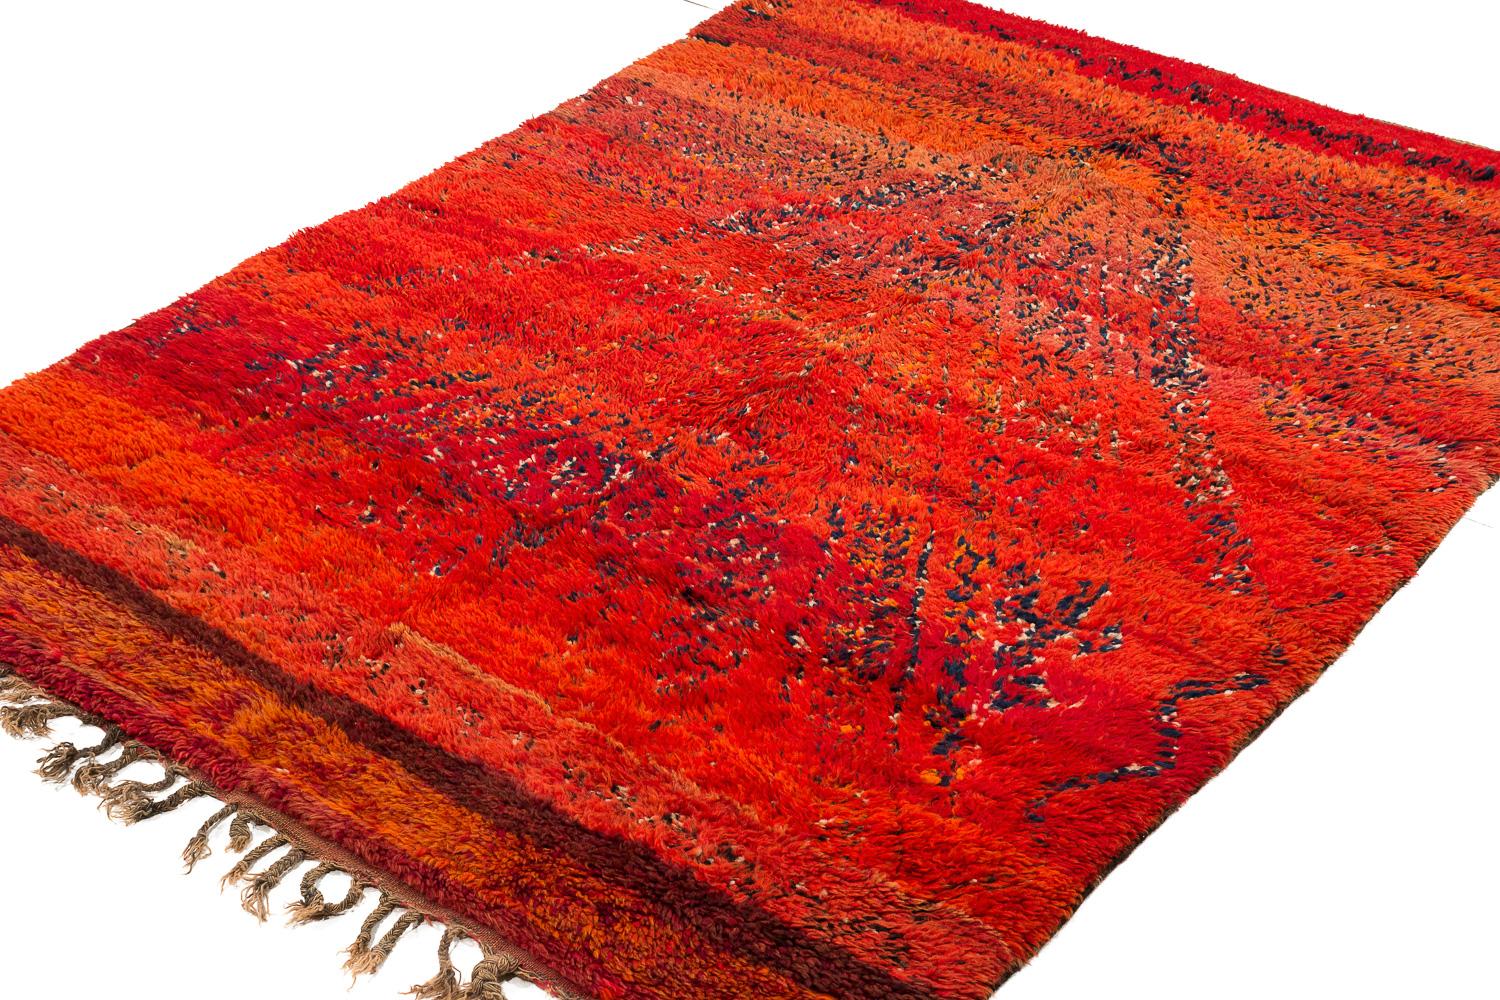 Hand-Woven Vintage Beni Mguild Moroccan Rug